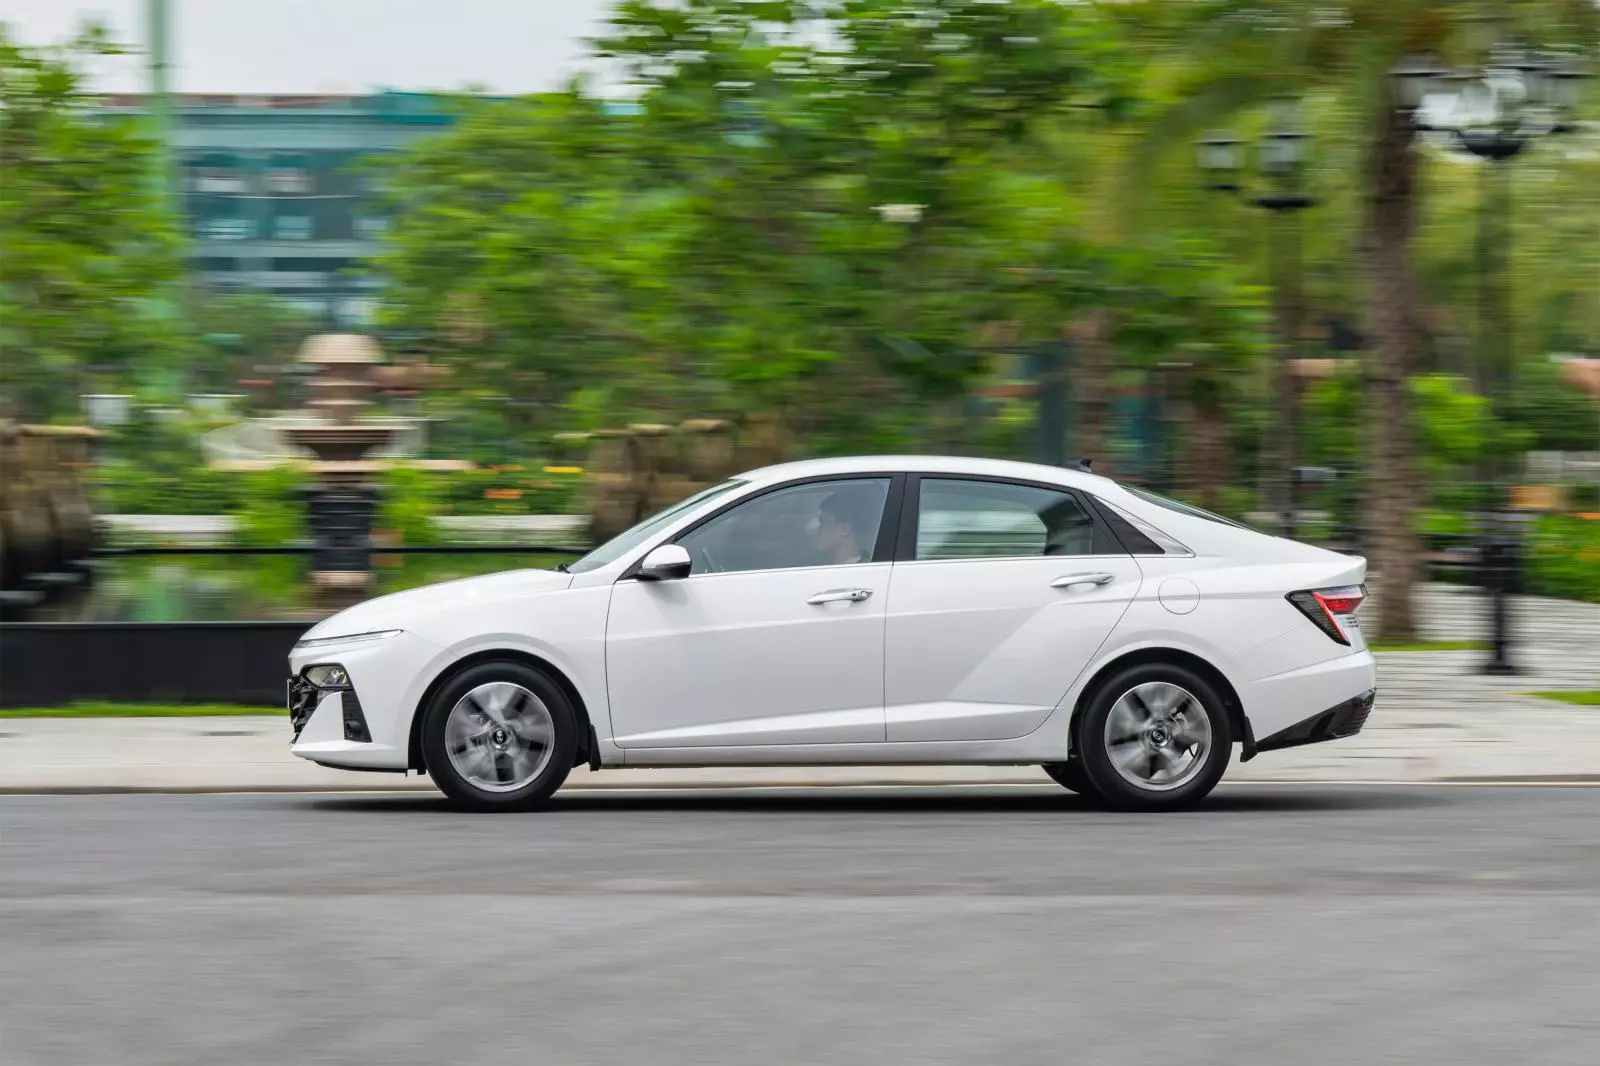 Tải ảnh xe Hyundai Accent cực chi tiết 22